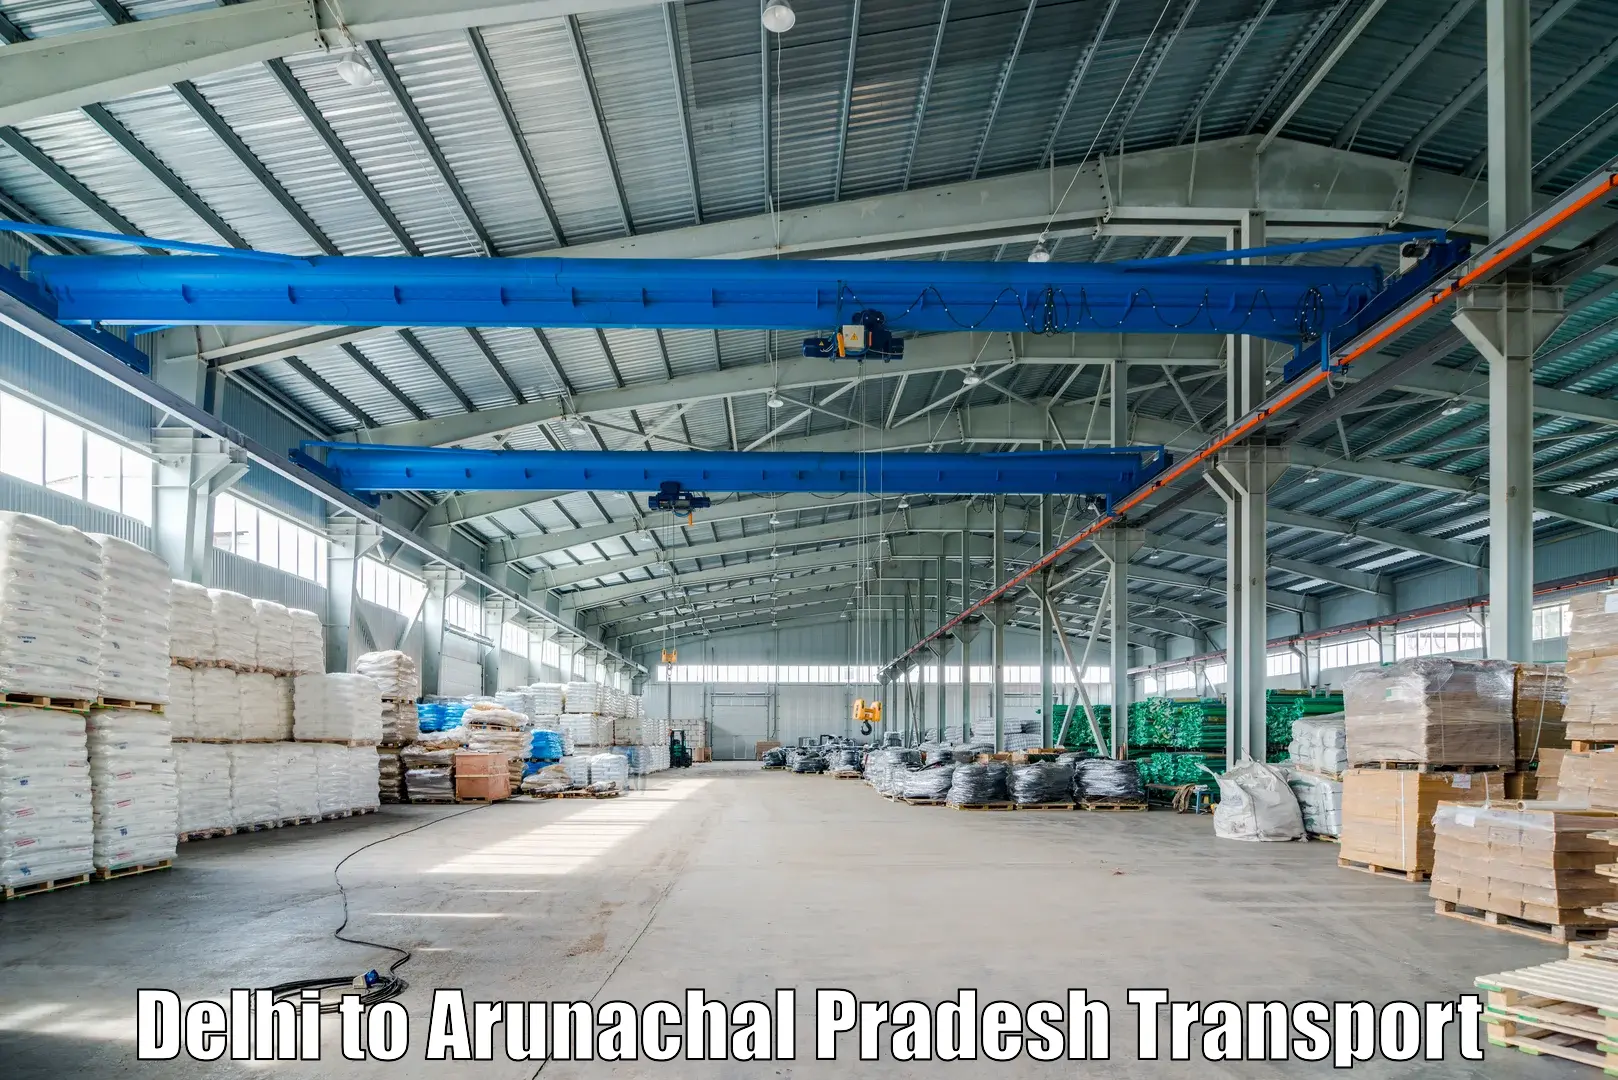 Online transport Delhi to Arunachal Pradesh